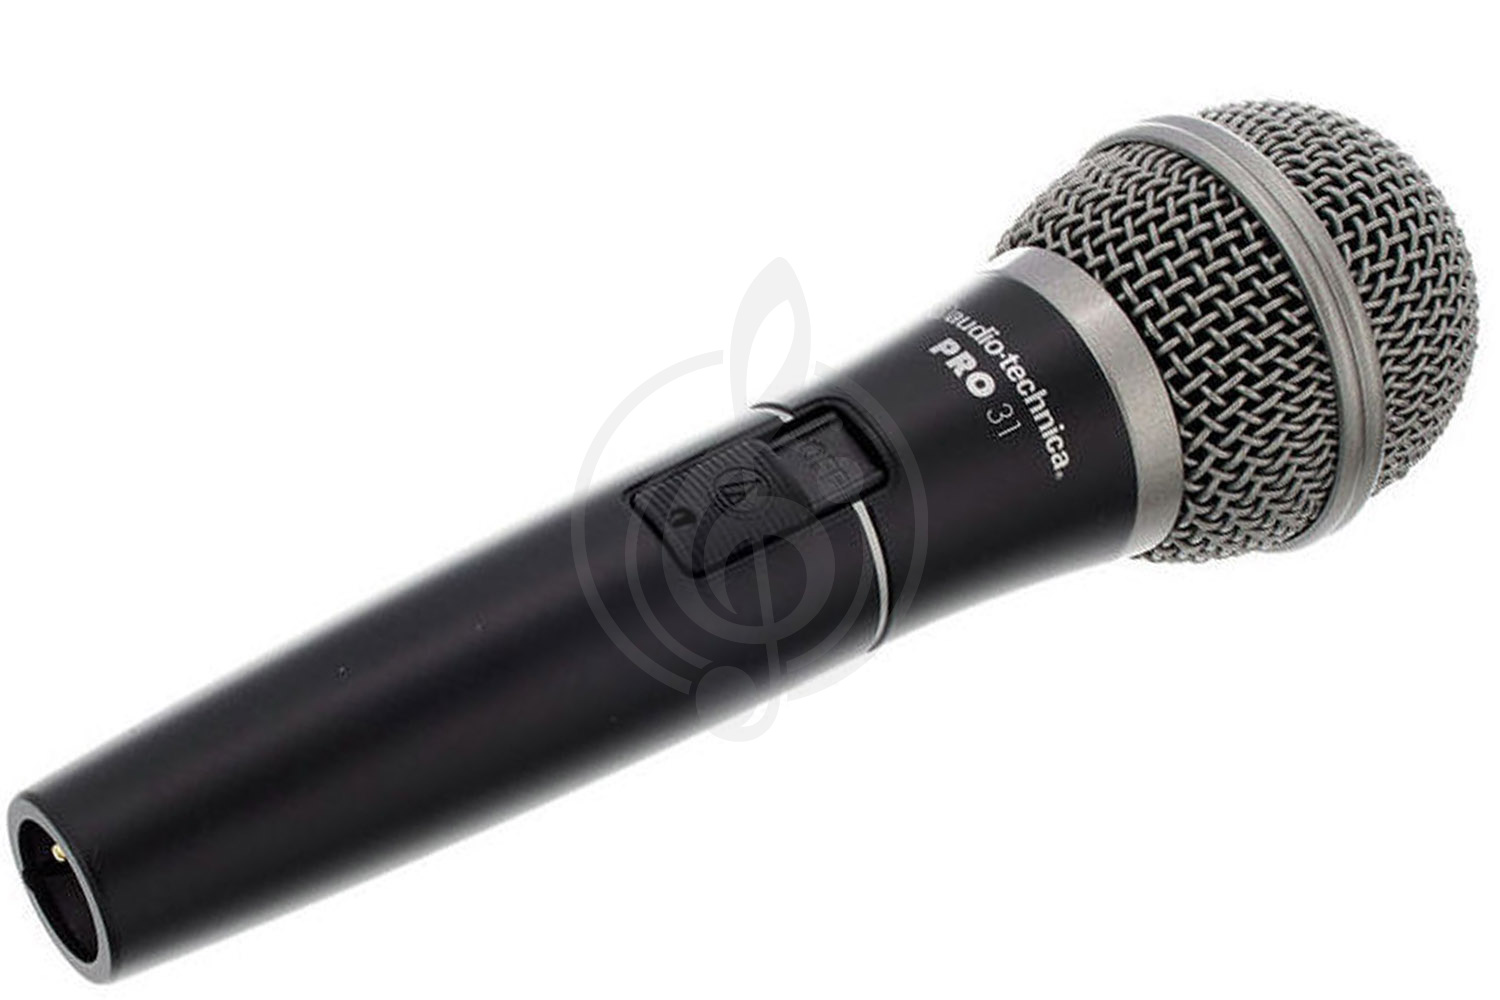 Динамический вокальный микрофон Динамические вокальные микрофоны AUDIO-TECHNICA Audio-Technica PRO31QTR - Микрофон динамический вокальный кардиоидный PRO31QTR - фото 1